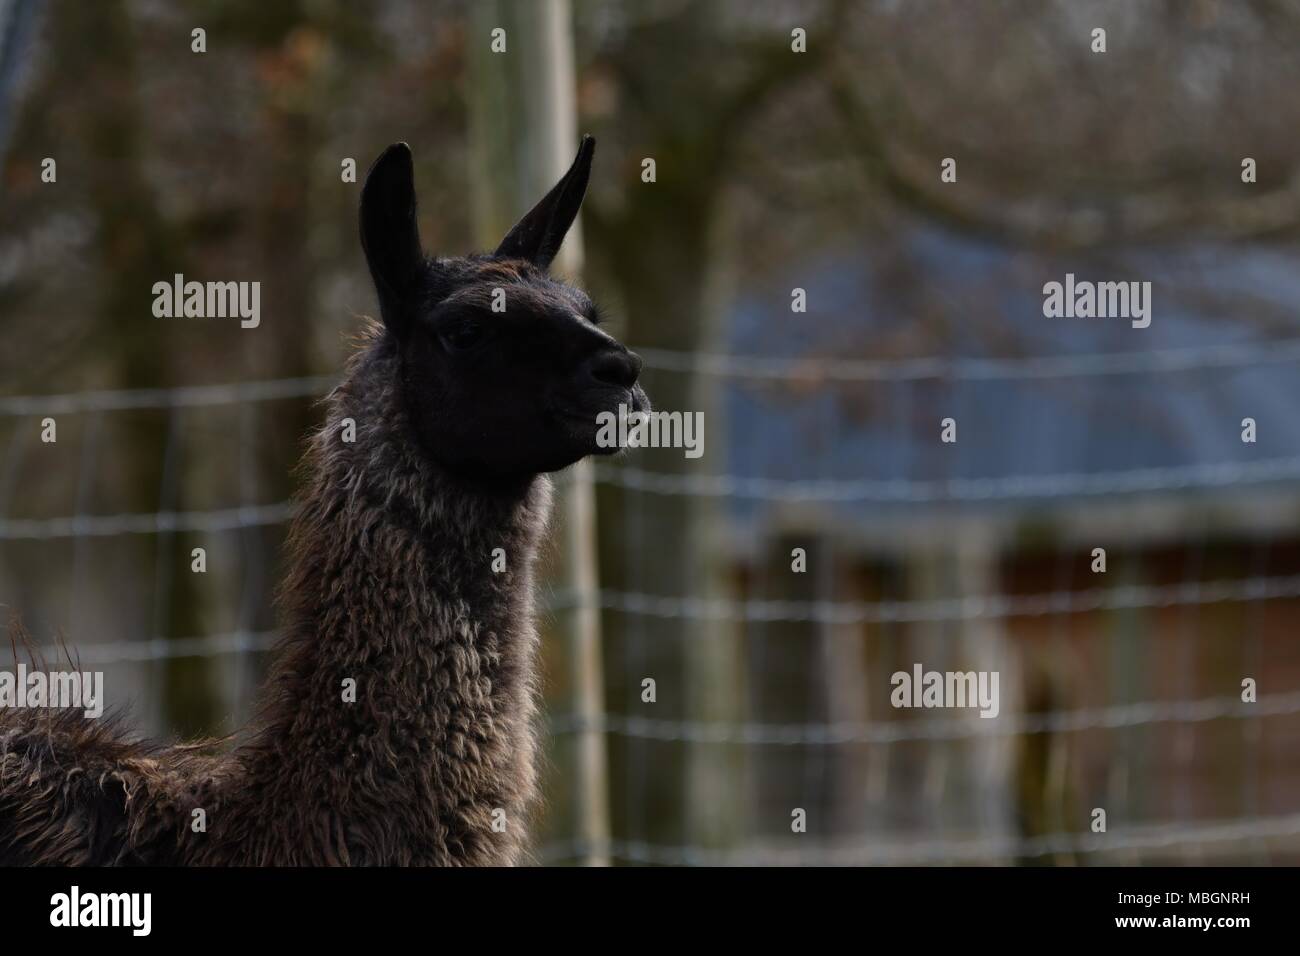 Lama glama, llama alpaca - portrait of cute llamas Stock Photo